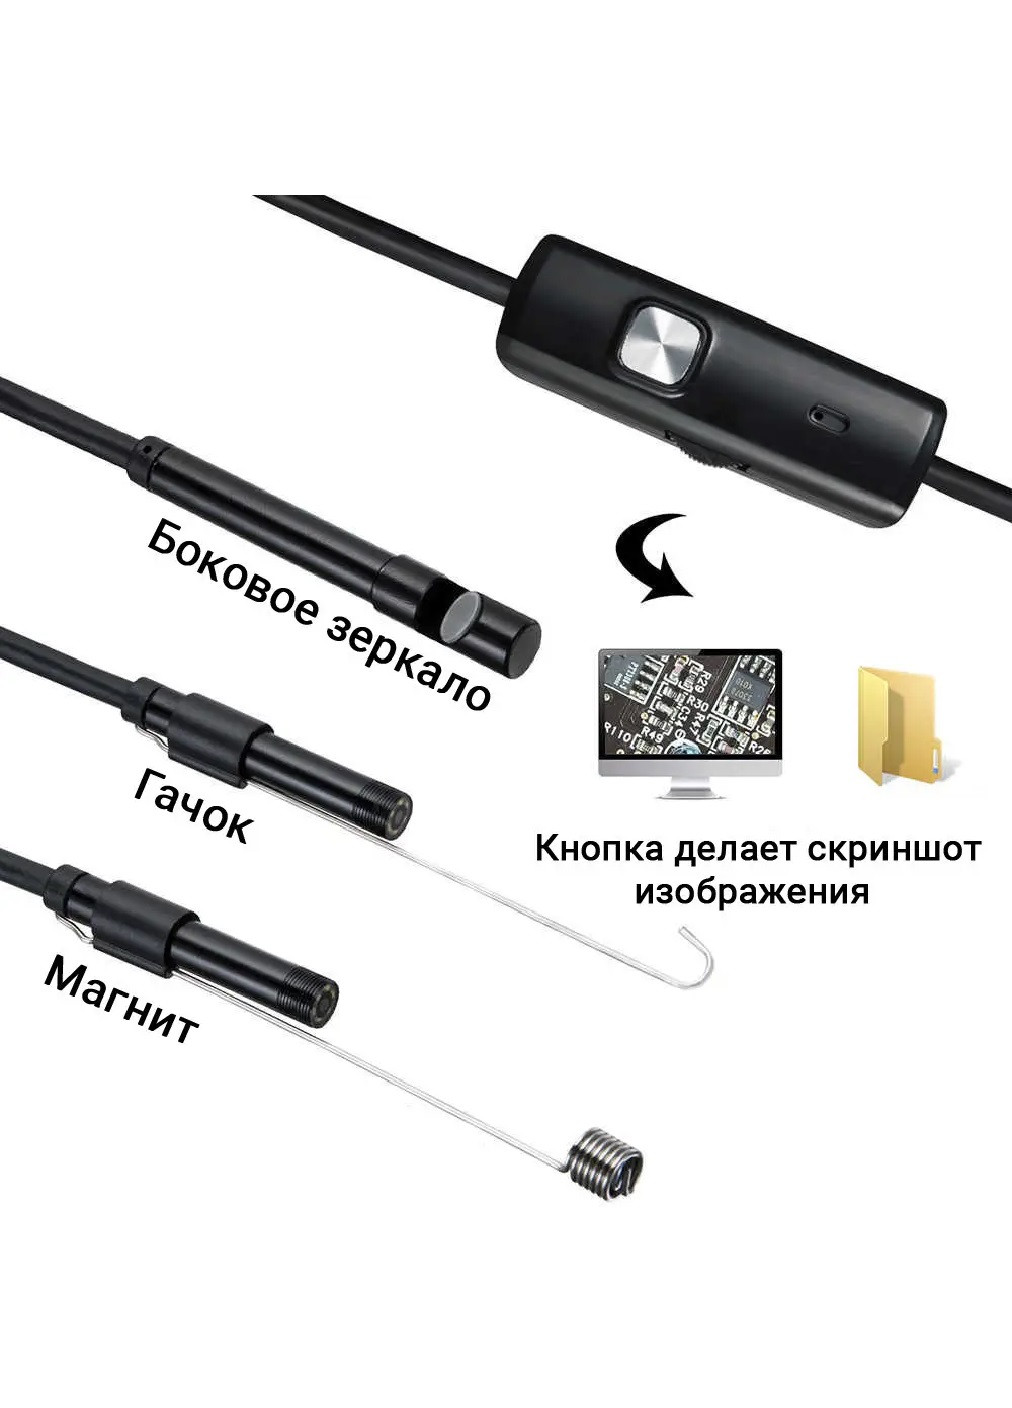 Универсальный эндоскоп бороскоп с веб мини видео камерой USB микро USB Type C 3 в 1 с жестким проводом 2 м (475002-Prob) Unbranded (260634268)